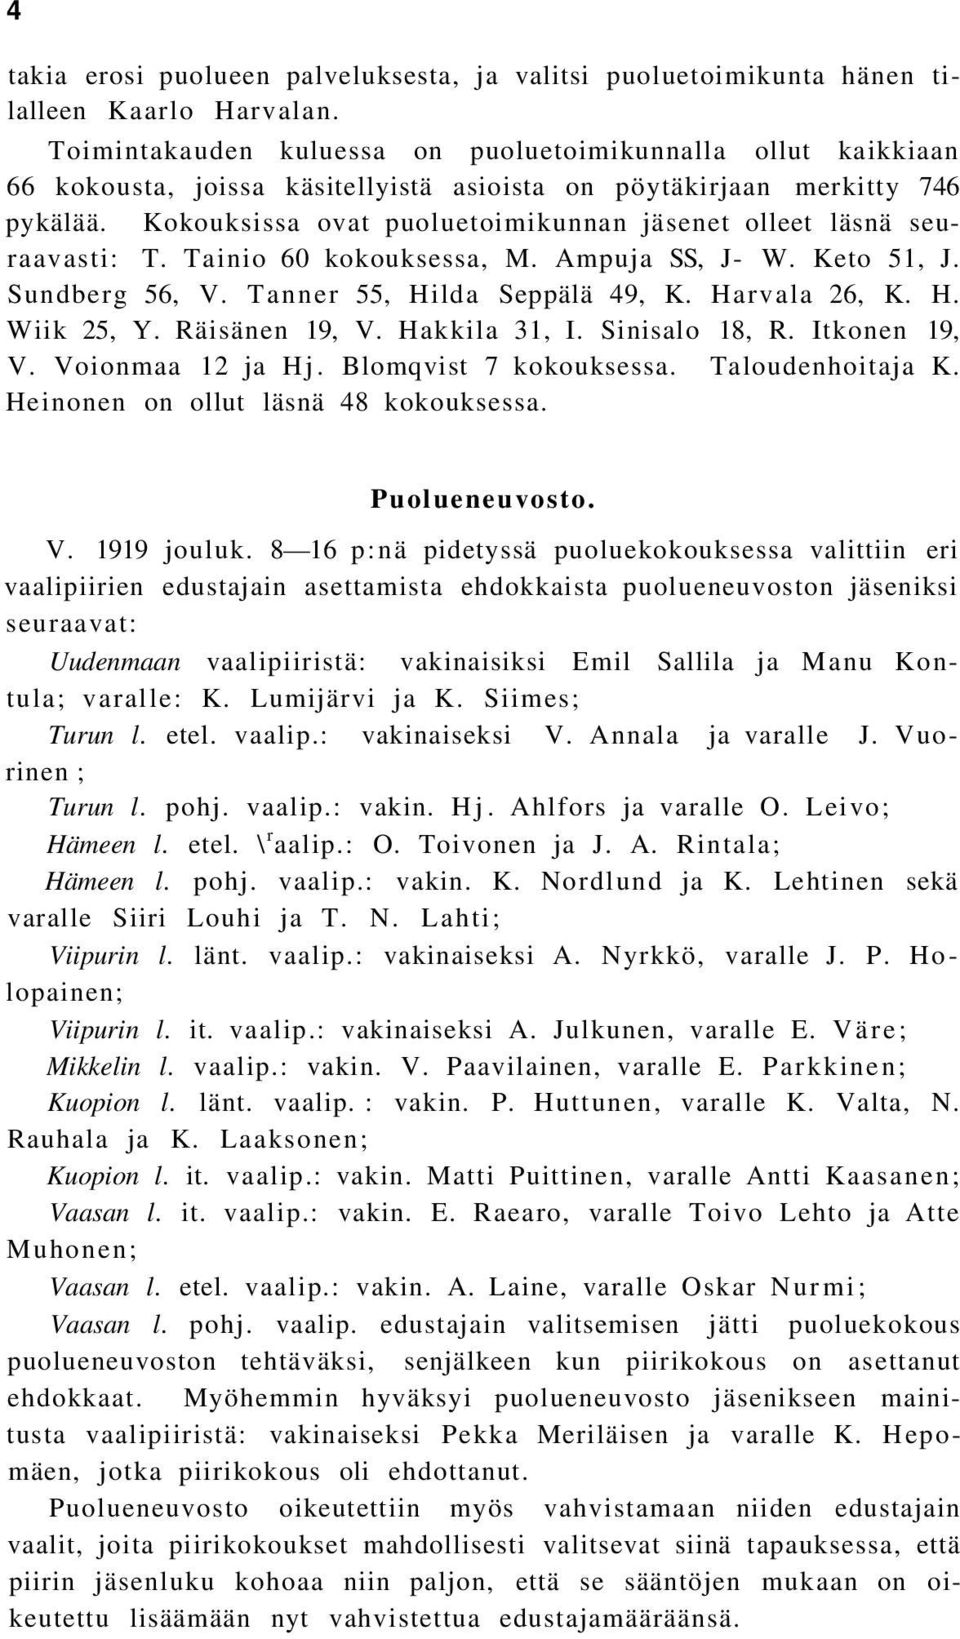 Kokouksissa ovat puoluetoimikunnan jäsenet olleet läsnä seuraavasti: T. Tainio 60 kokouksessa, M. Ampuja SS, J- W. Keto 51, J. Sundberg 56, V. Tanner 55, Hilda Seppälä 49, K. Harvala 26, K. H. Wiik 25, Y.